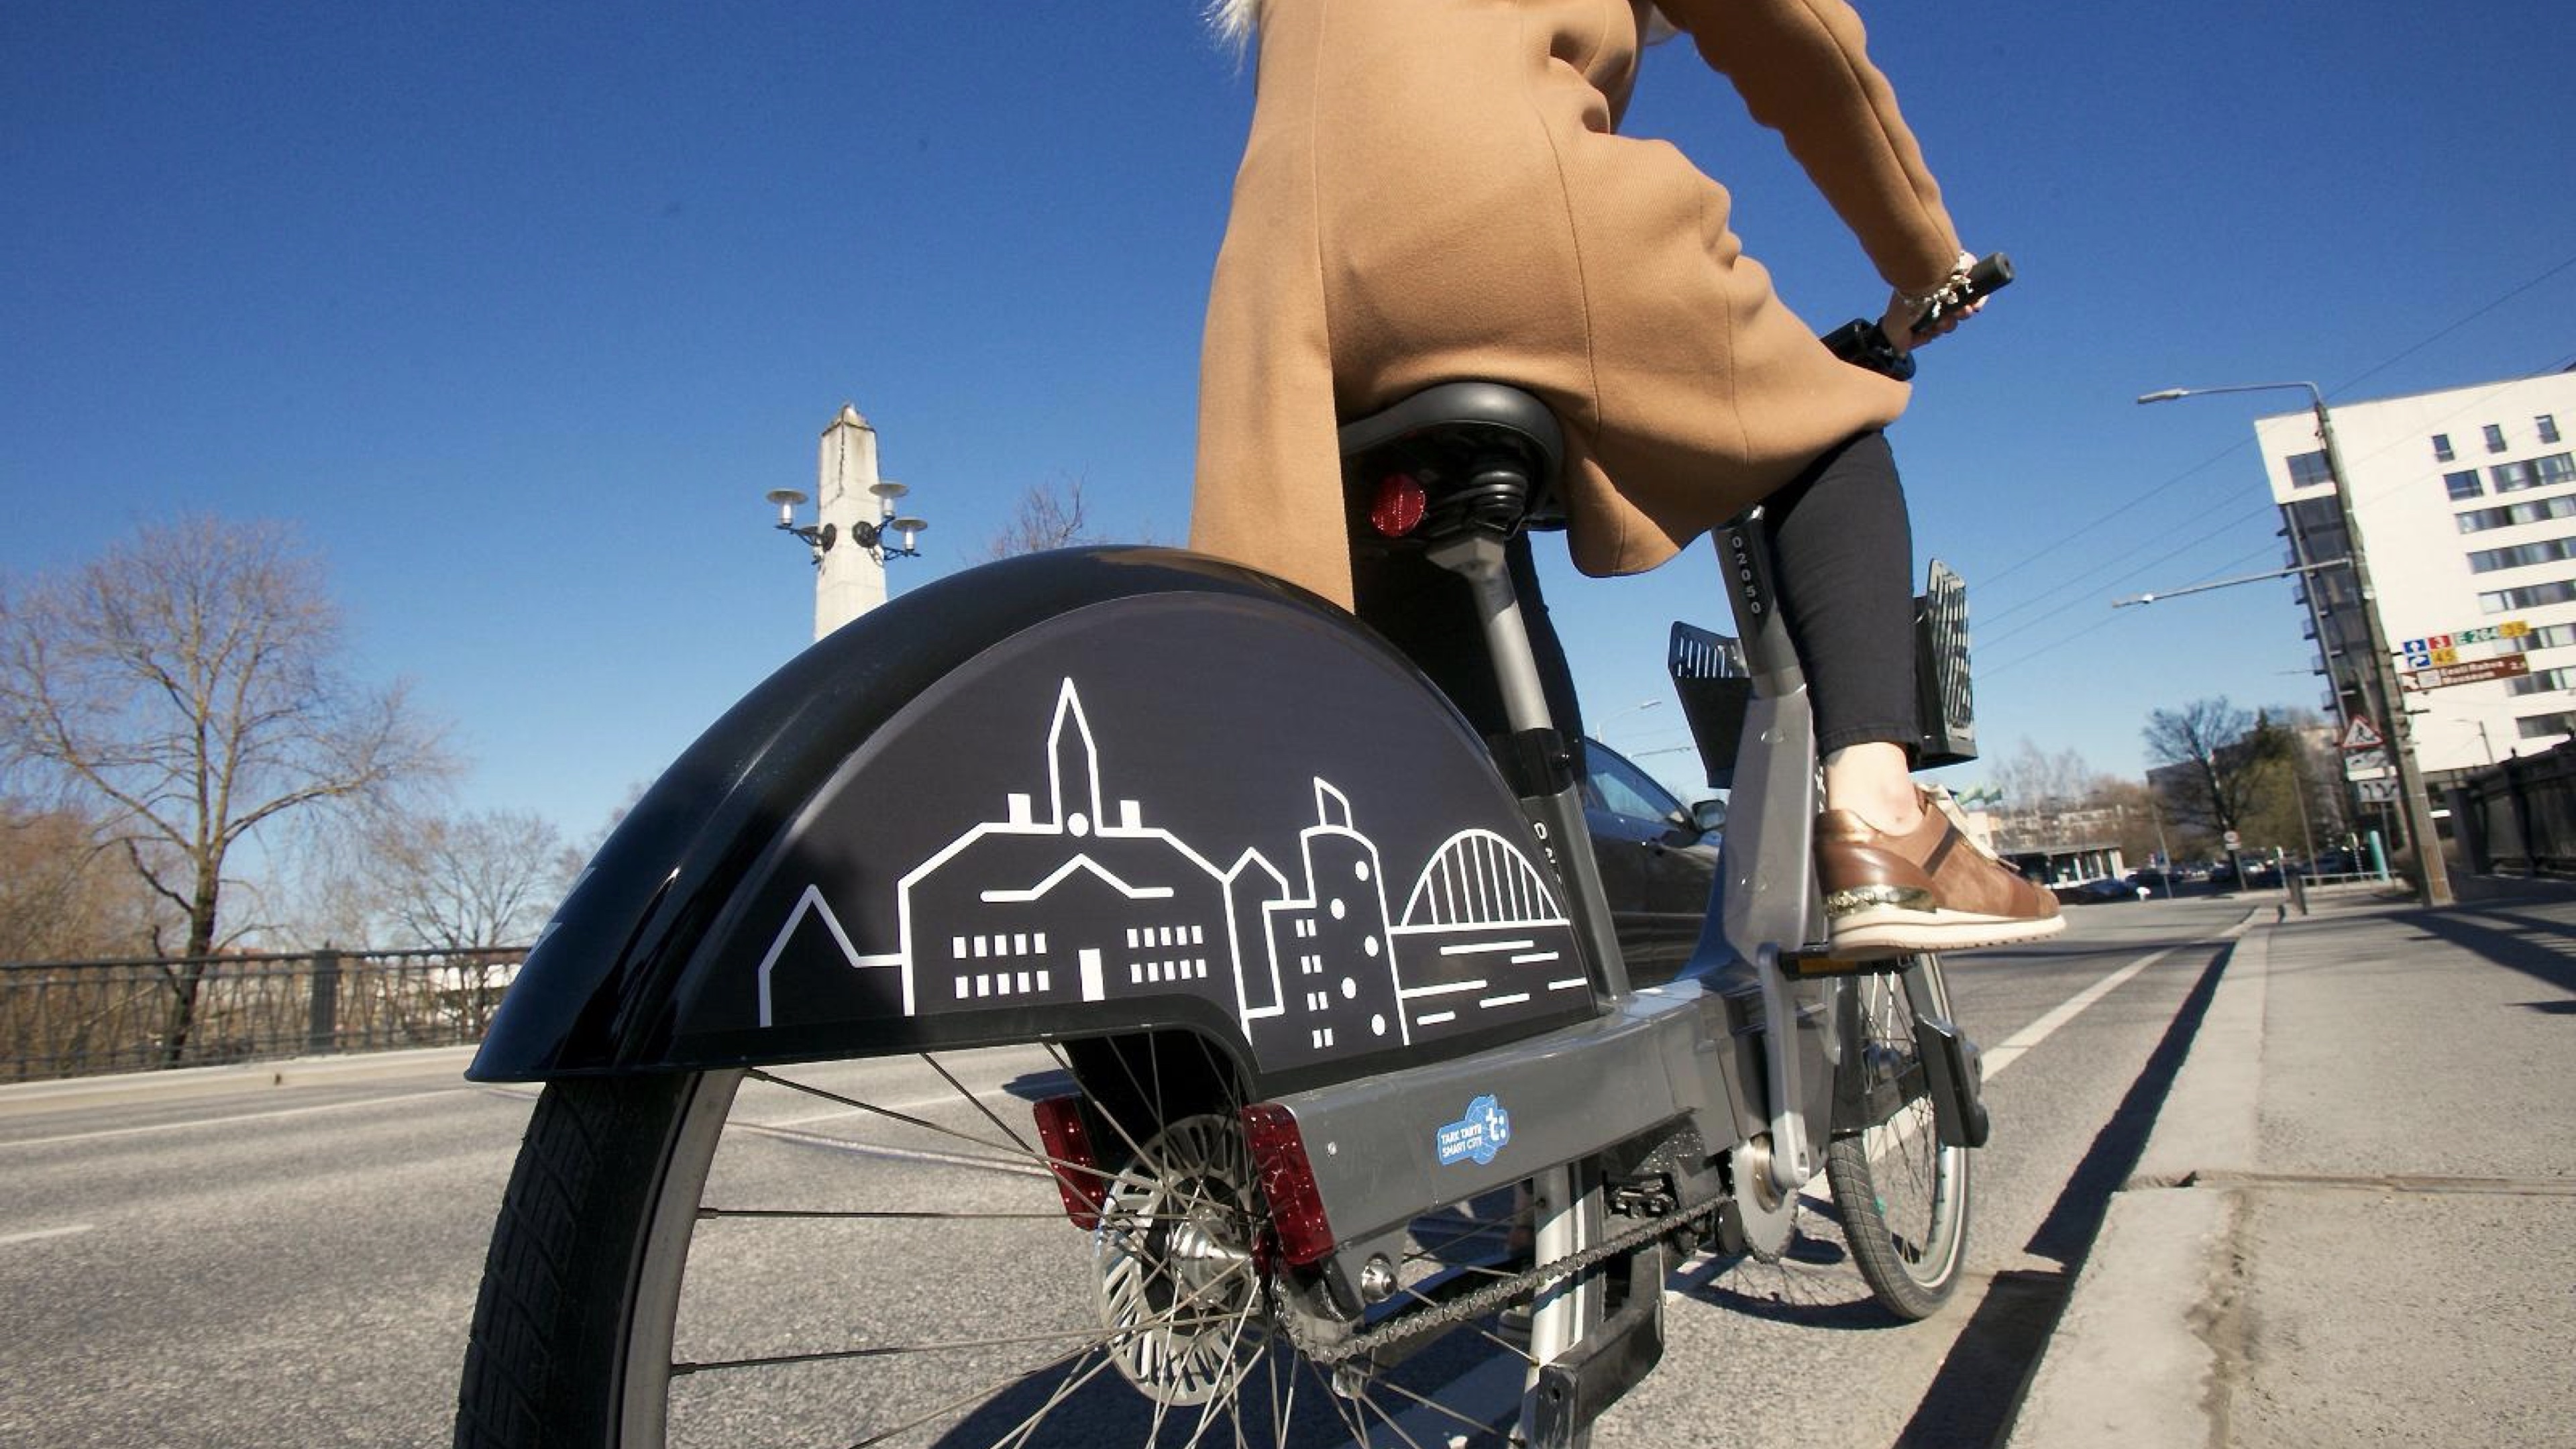 タルトゥ（エストニア第2の都市）で2019年から開始したスマートバイクシェアサービス